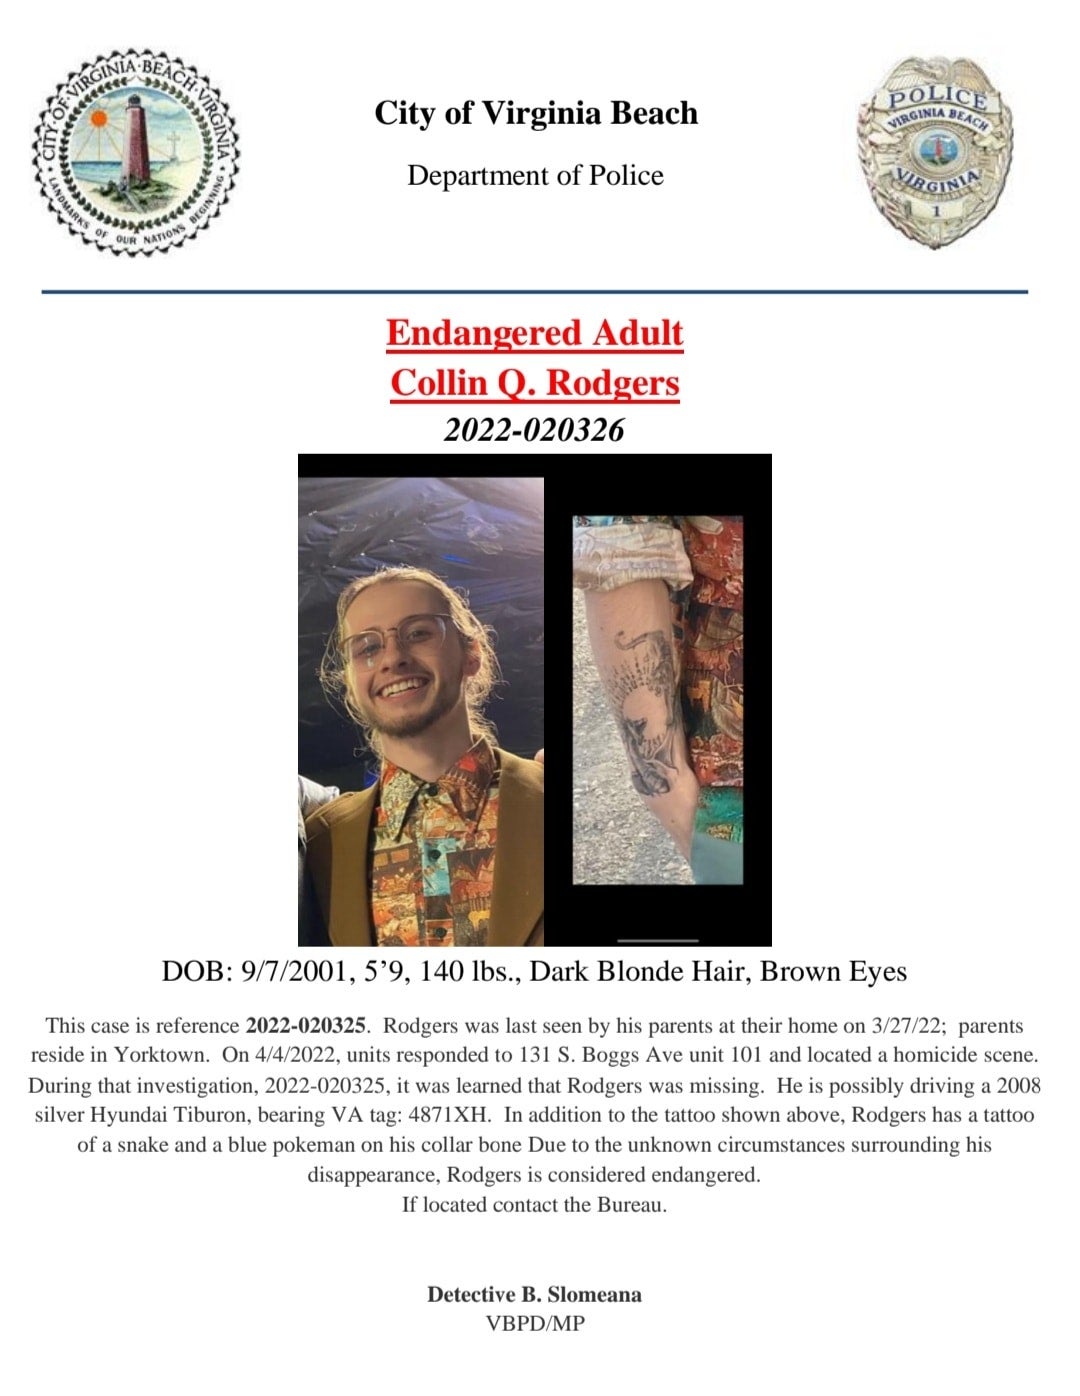 La policía está solicitando información acerca de Collin Q. Rodgers, quien está desaparecido desde que encontraron los cuerpos de su hermano y su cuñada